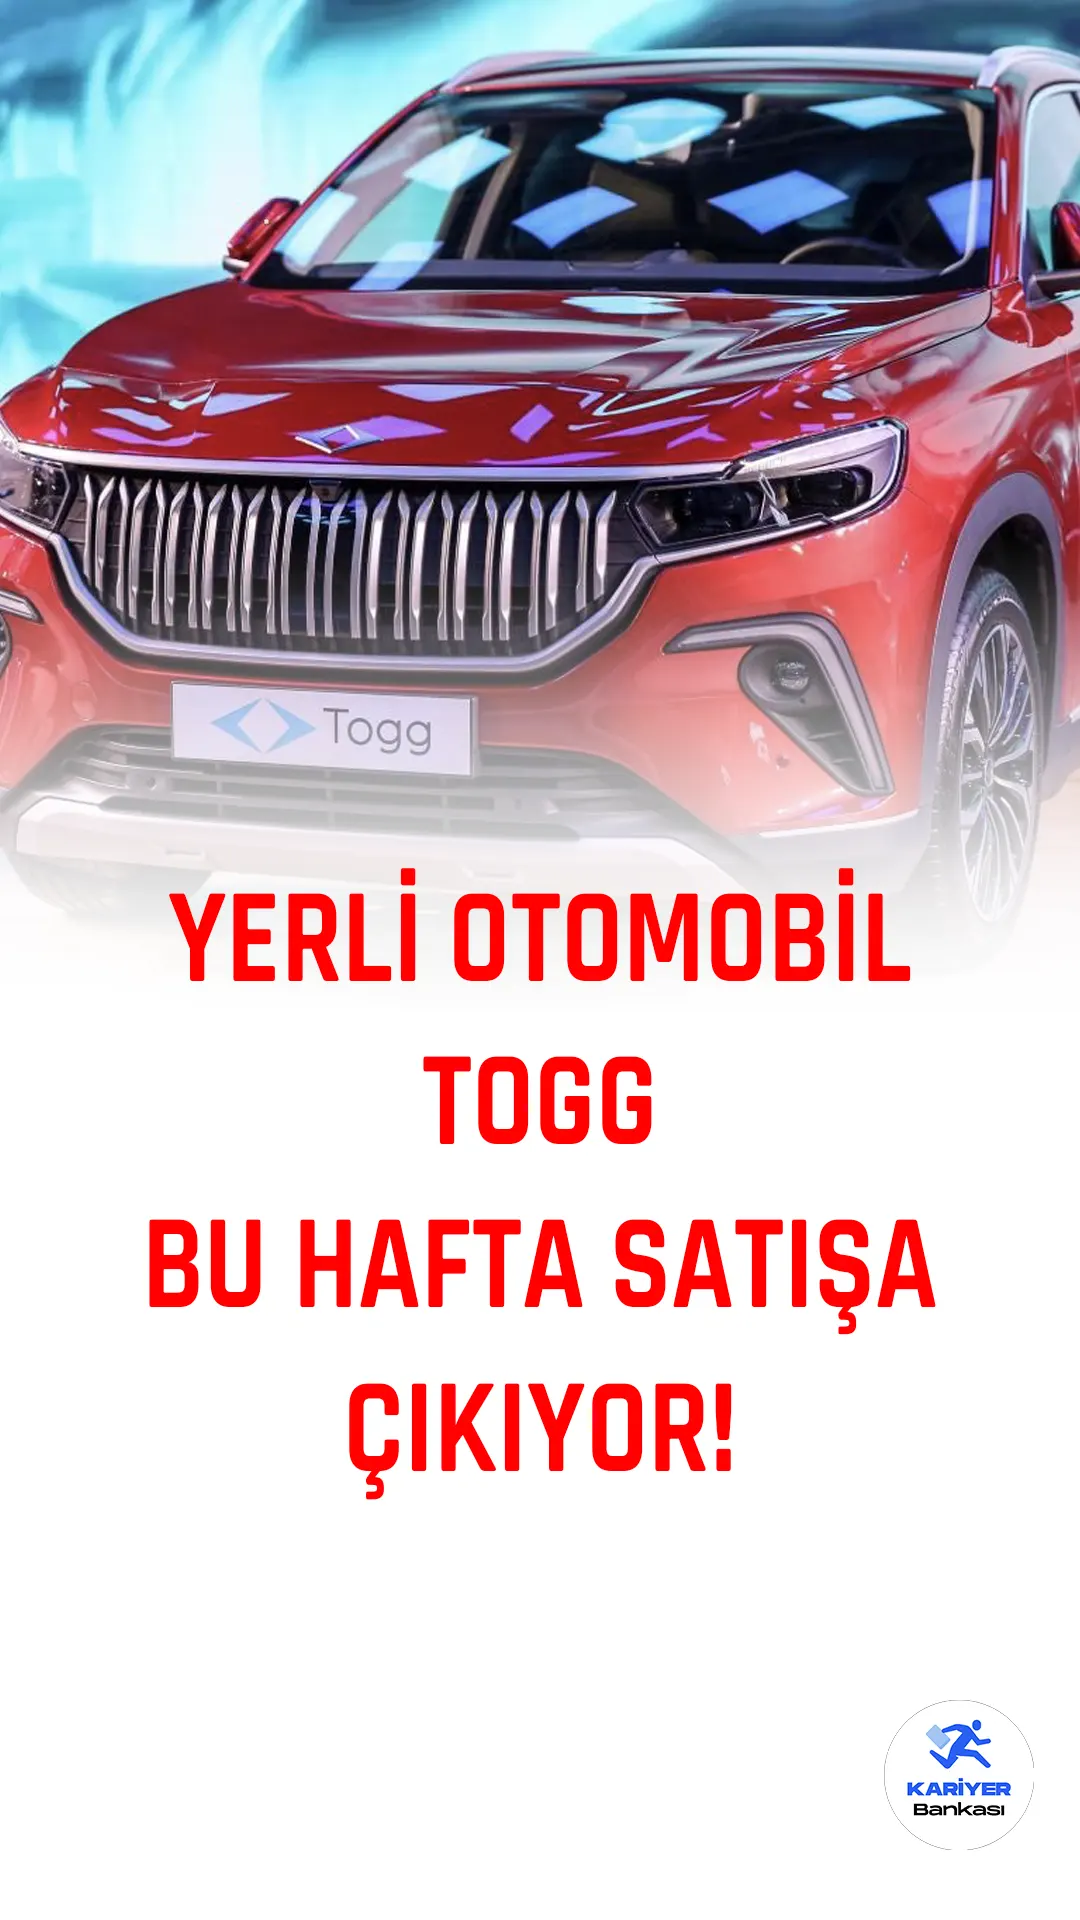 Türkiye'nin yerli otomobili Togg, uzun bir bekleyişin ardından önümüzdeki günlerde satışa çıkıyor.